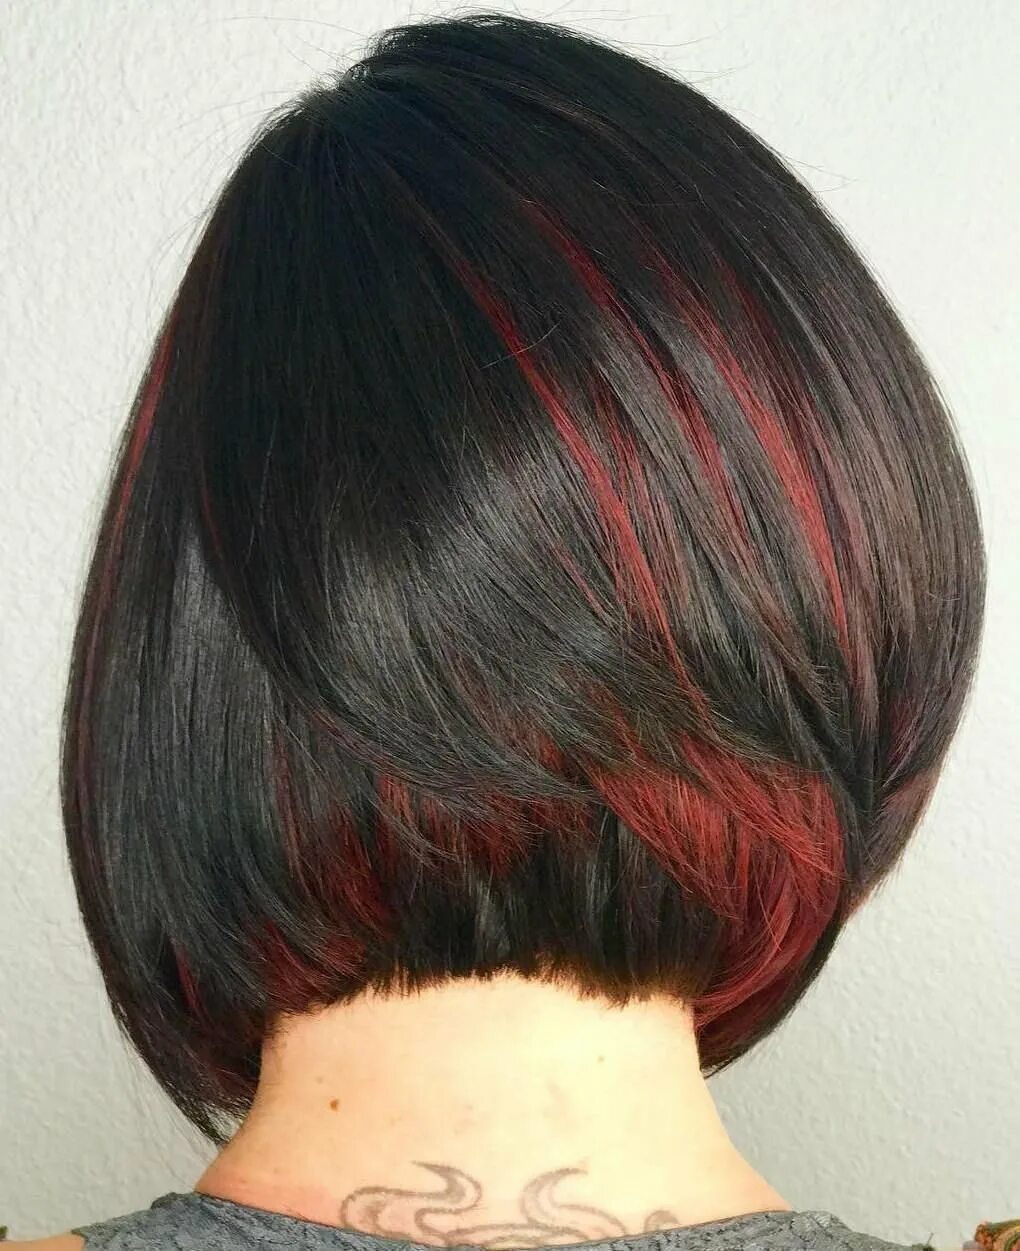 Чёрный с красным волосы короткие. Темный цвет волос с красными прядями. Окрашивание с красными прядями. Пряди на темных волосах каре.